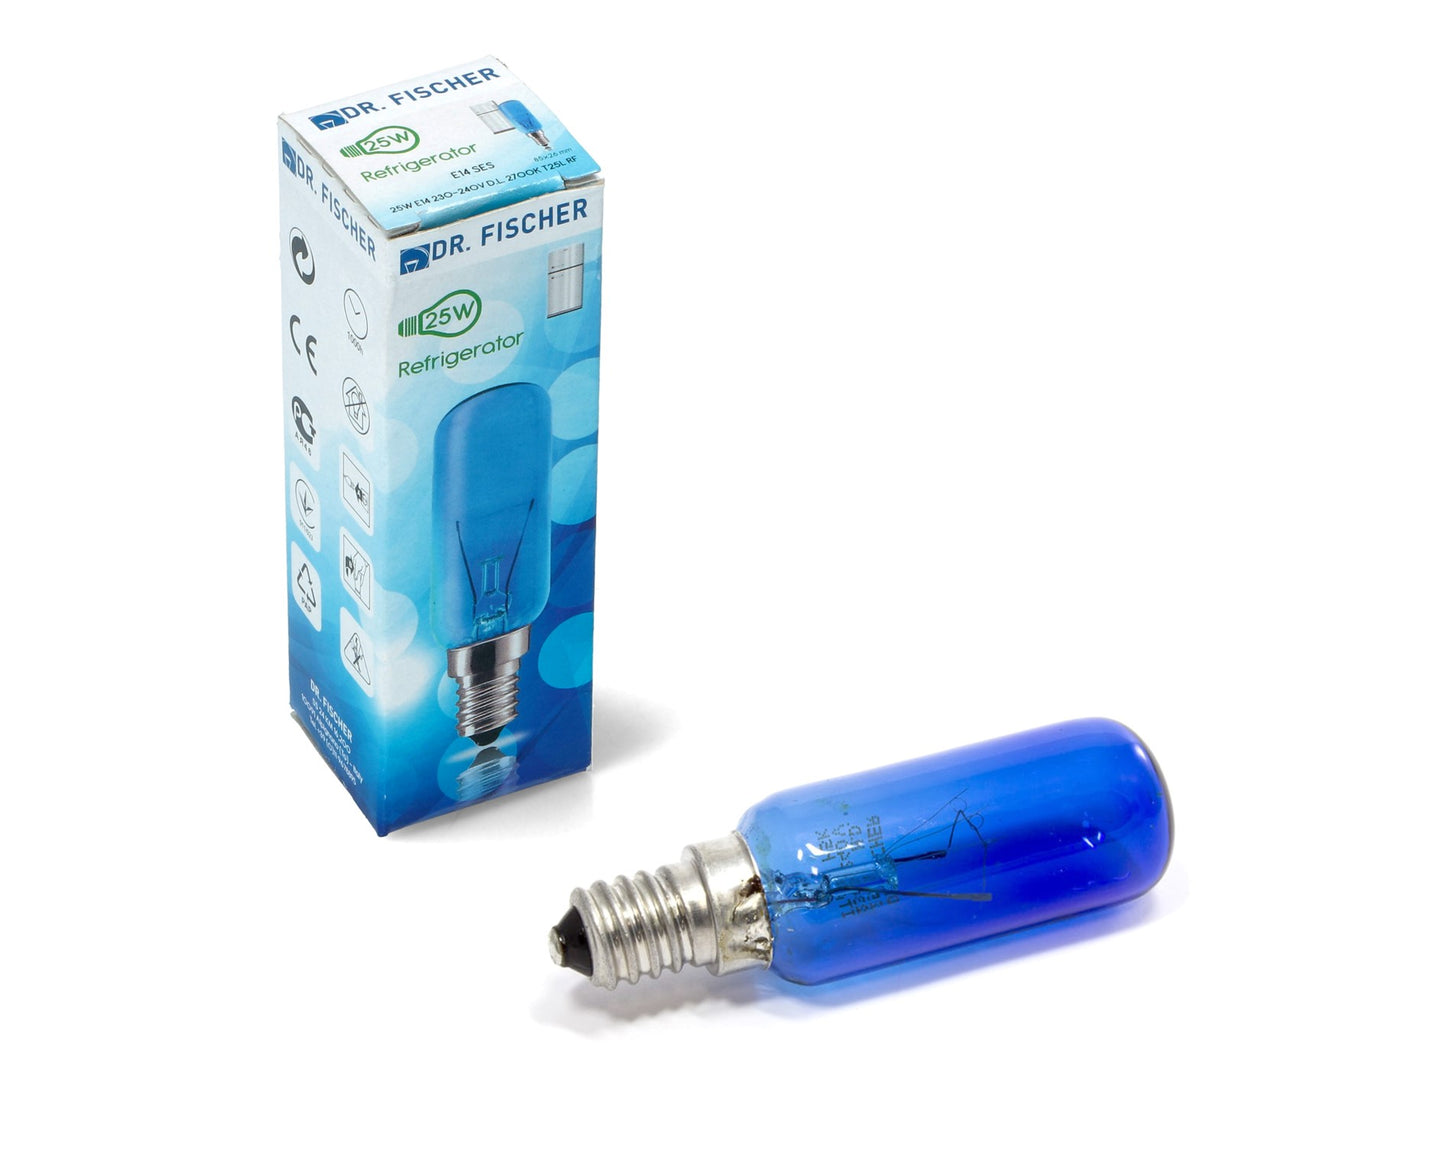 Genuine Dr Fischer Bosch Neff Siemens Refrigeration Fridge Freezer Blue 'Daylight' Lamp bulb - 612235, 00612235, ES1947690, ES1220347